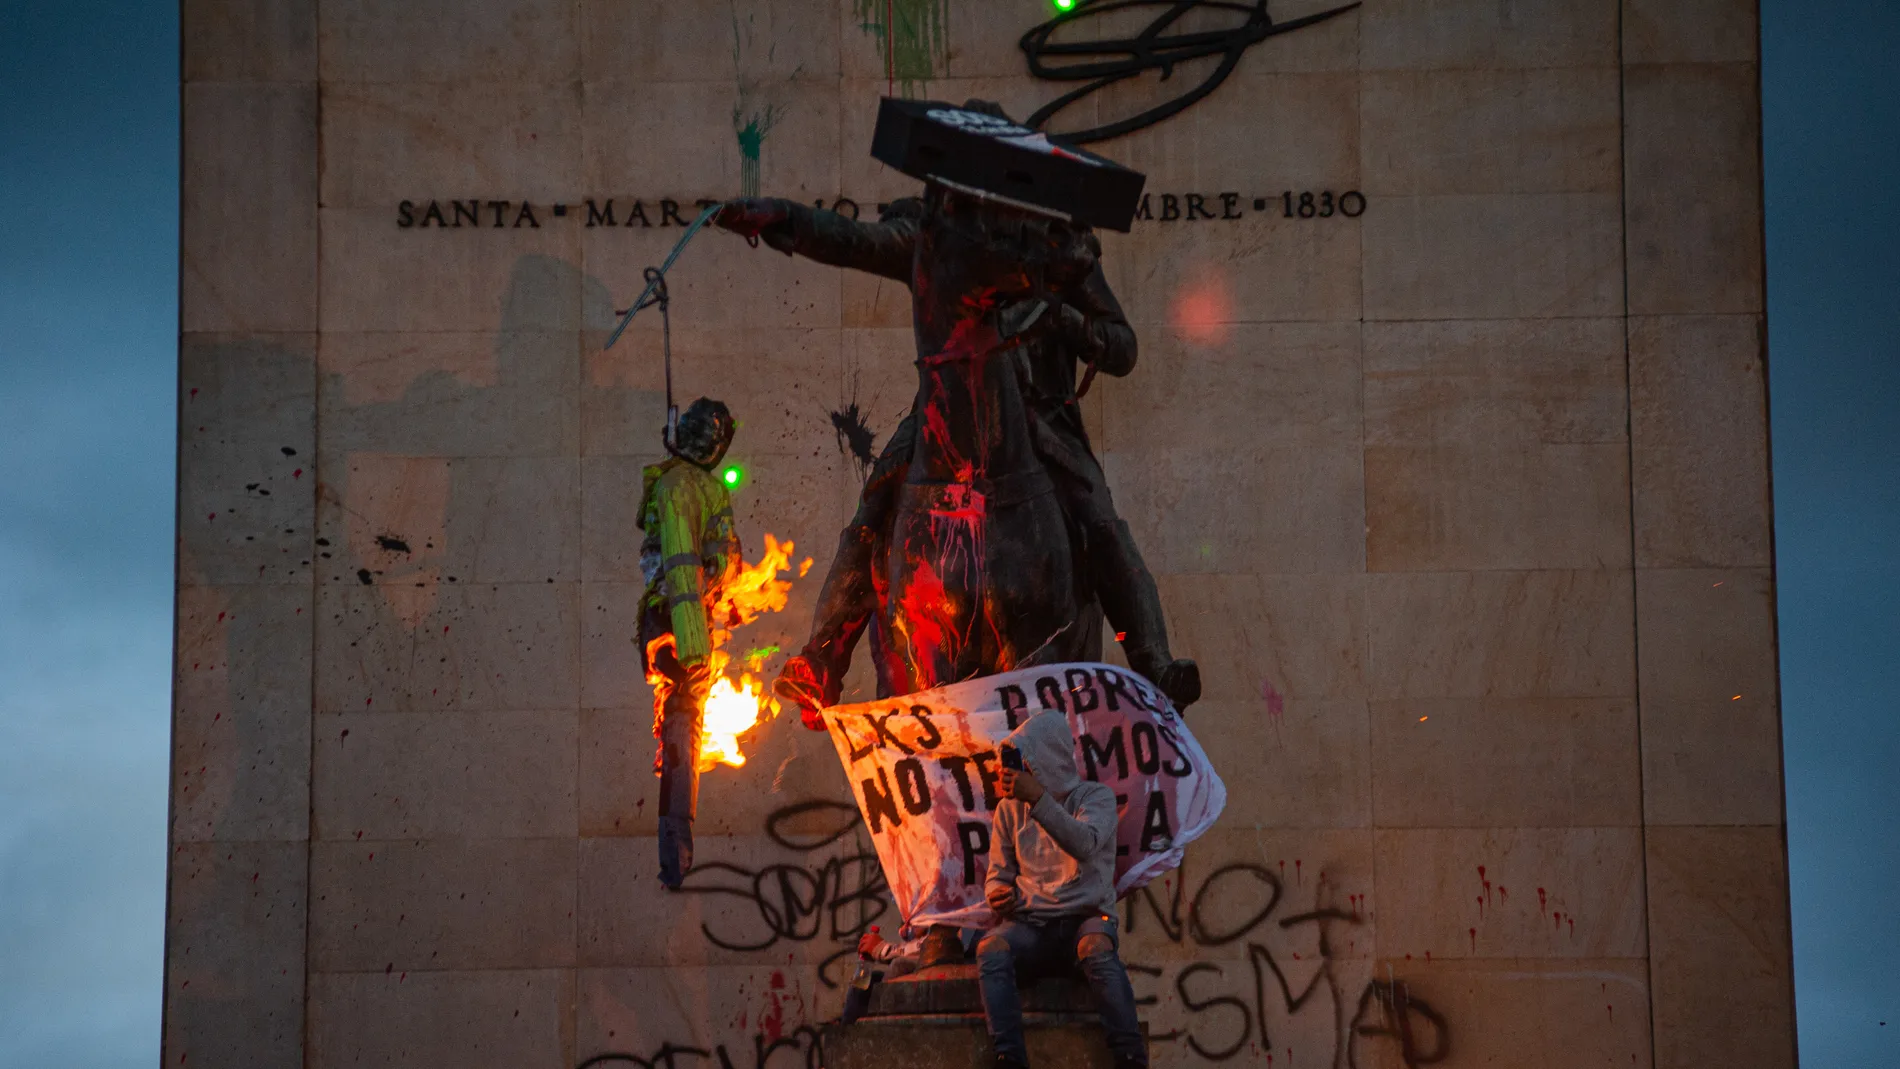 Manifestantes en Colombia prenden fuego a una marioneta en una protesta en Bogotá